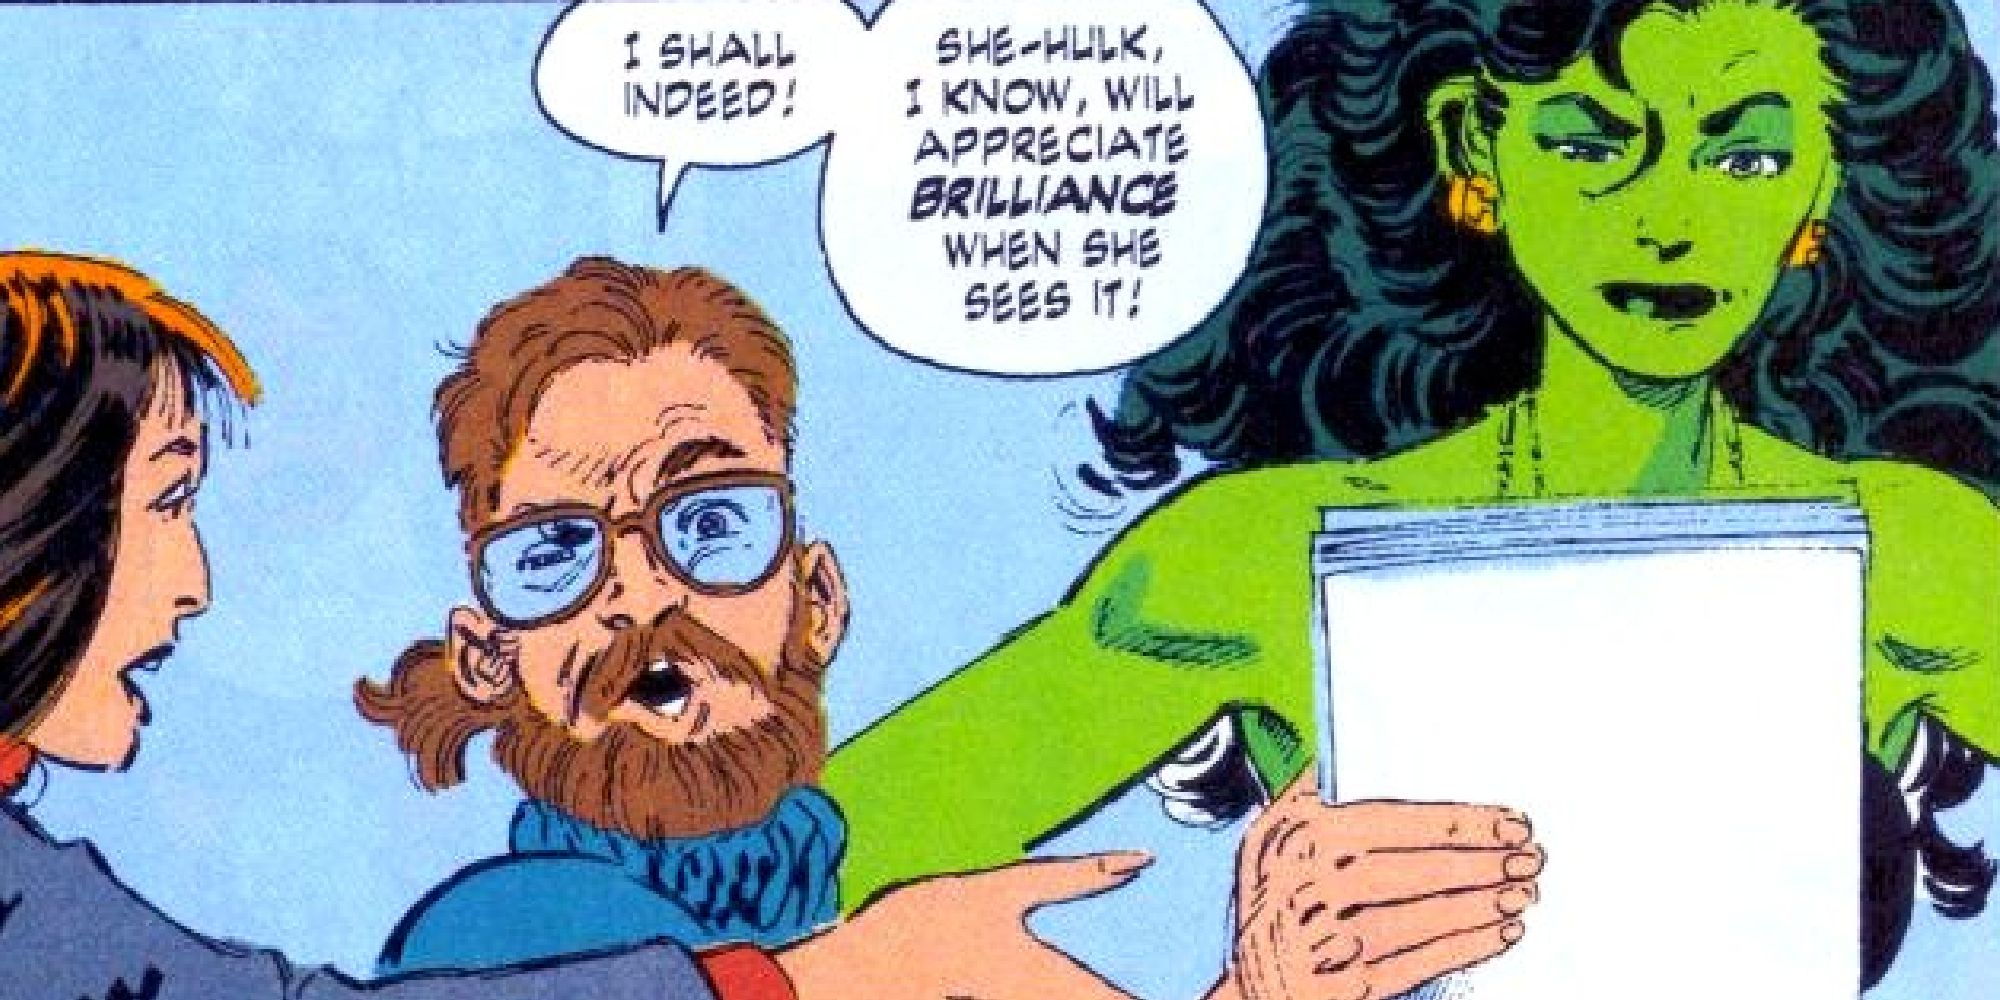 Джон Бирн вручает Женщине-Халку комическую рукопись в комиксах